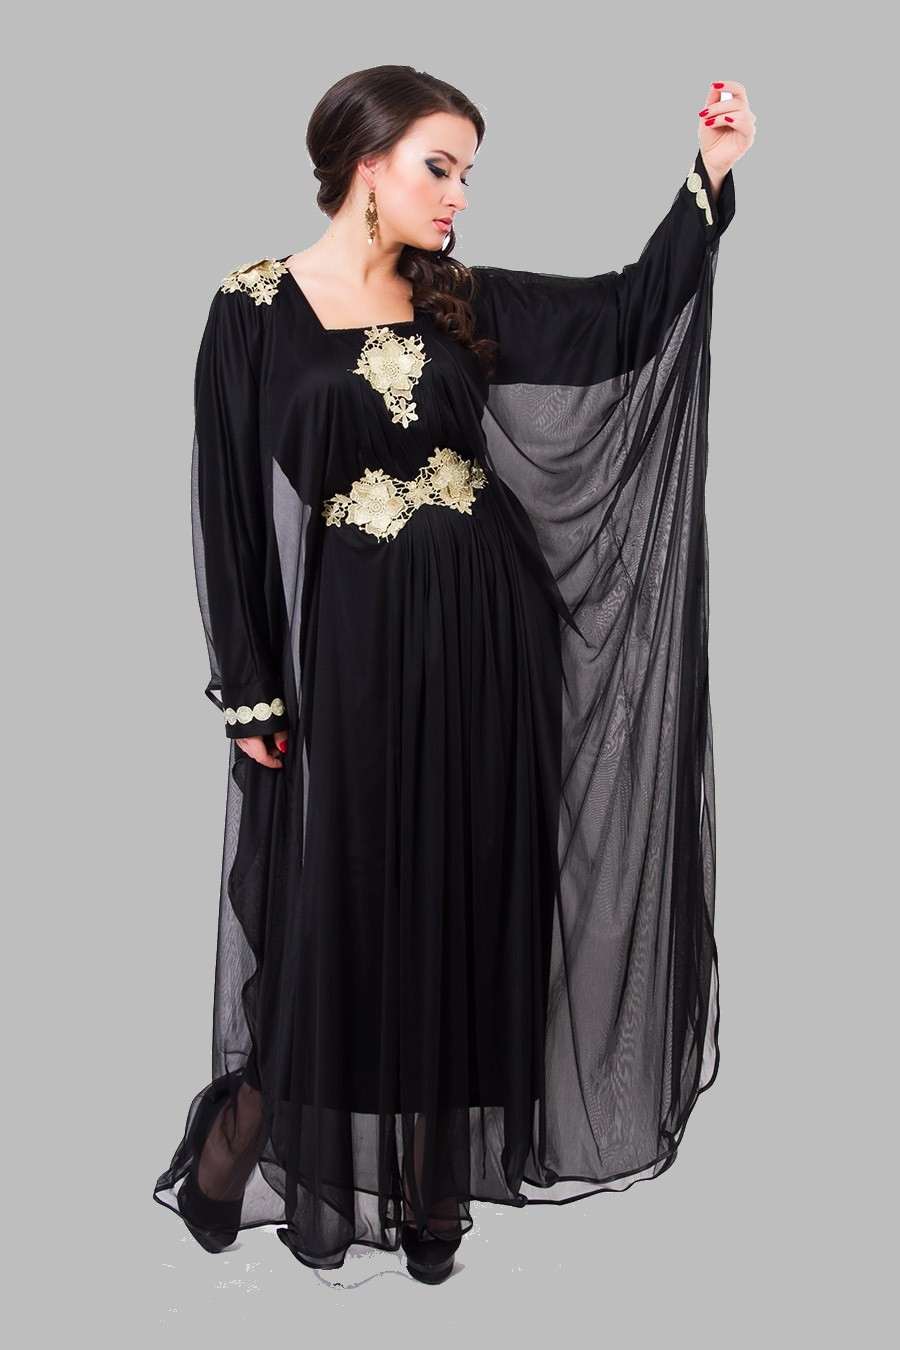 Embroidered Abaya Designs 2013 | Islamic Abaya Dress Fashion 2013-14